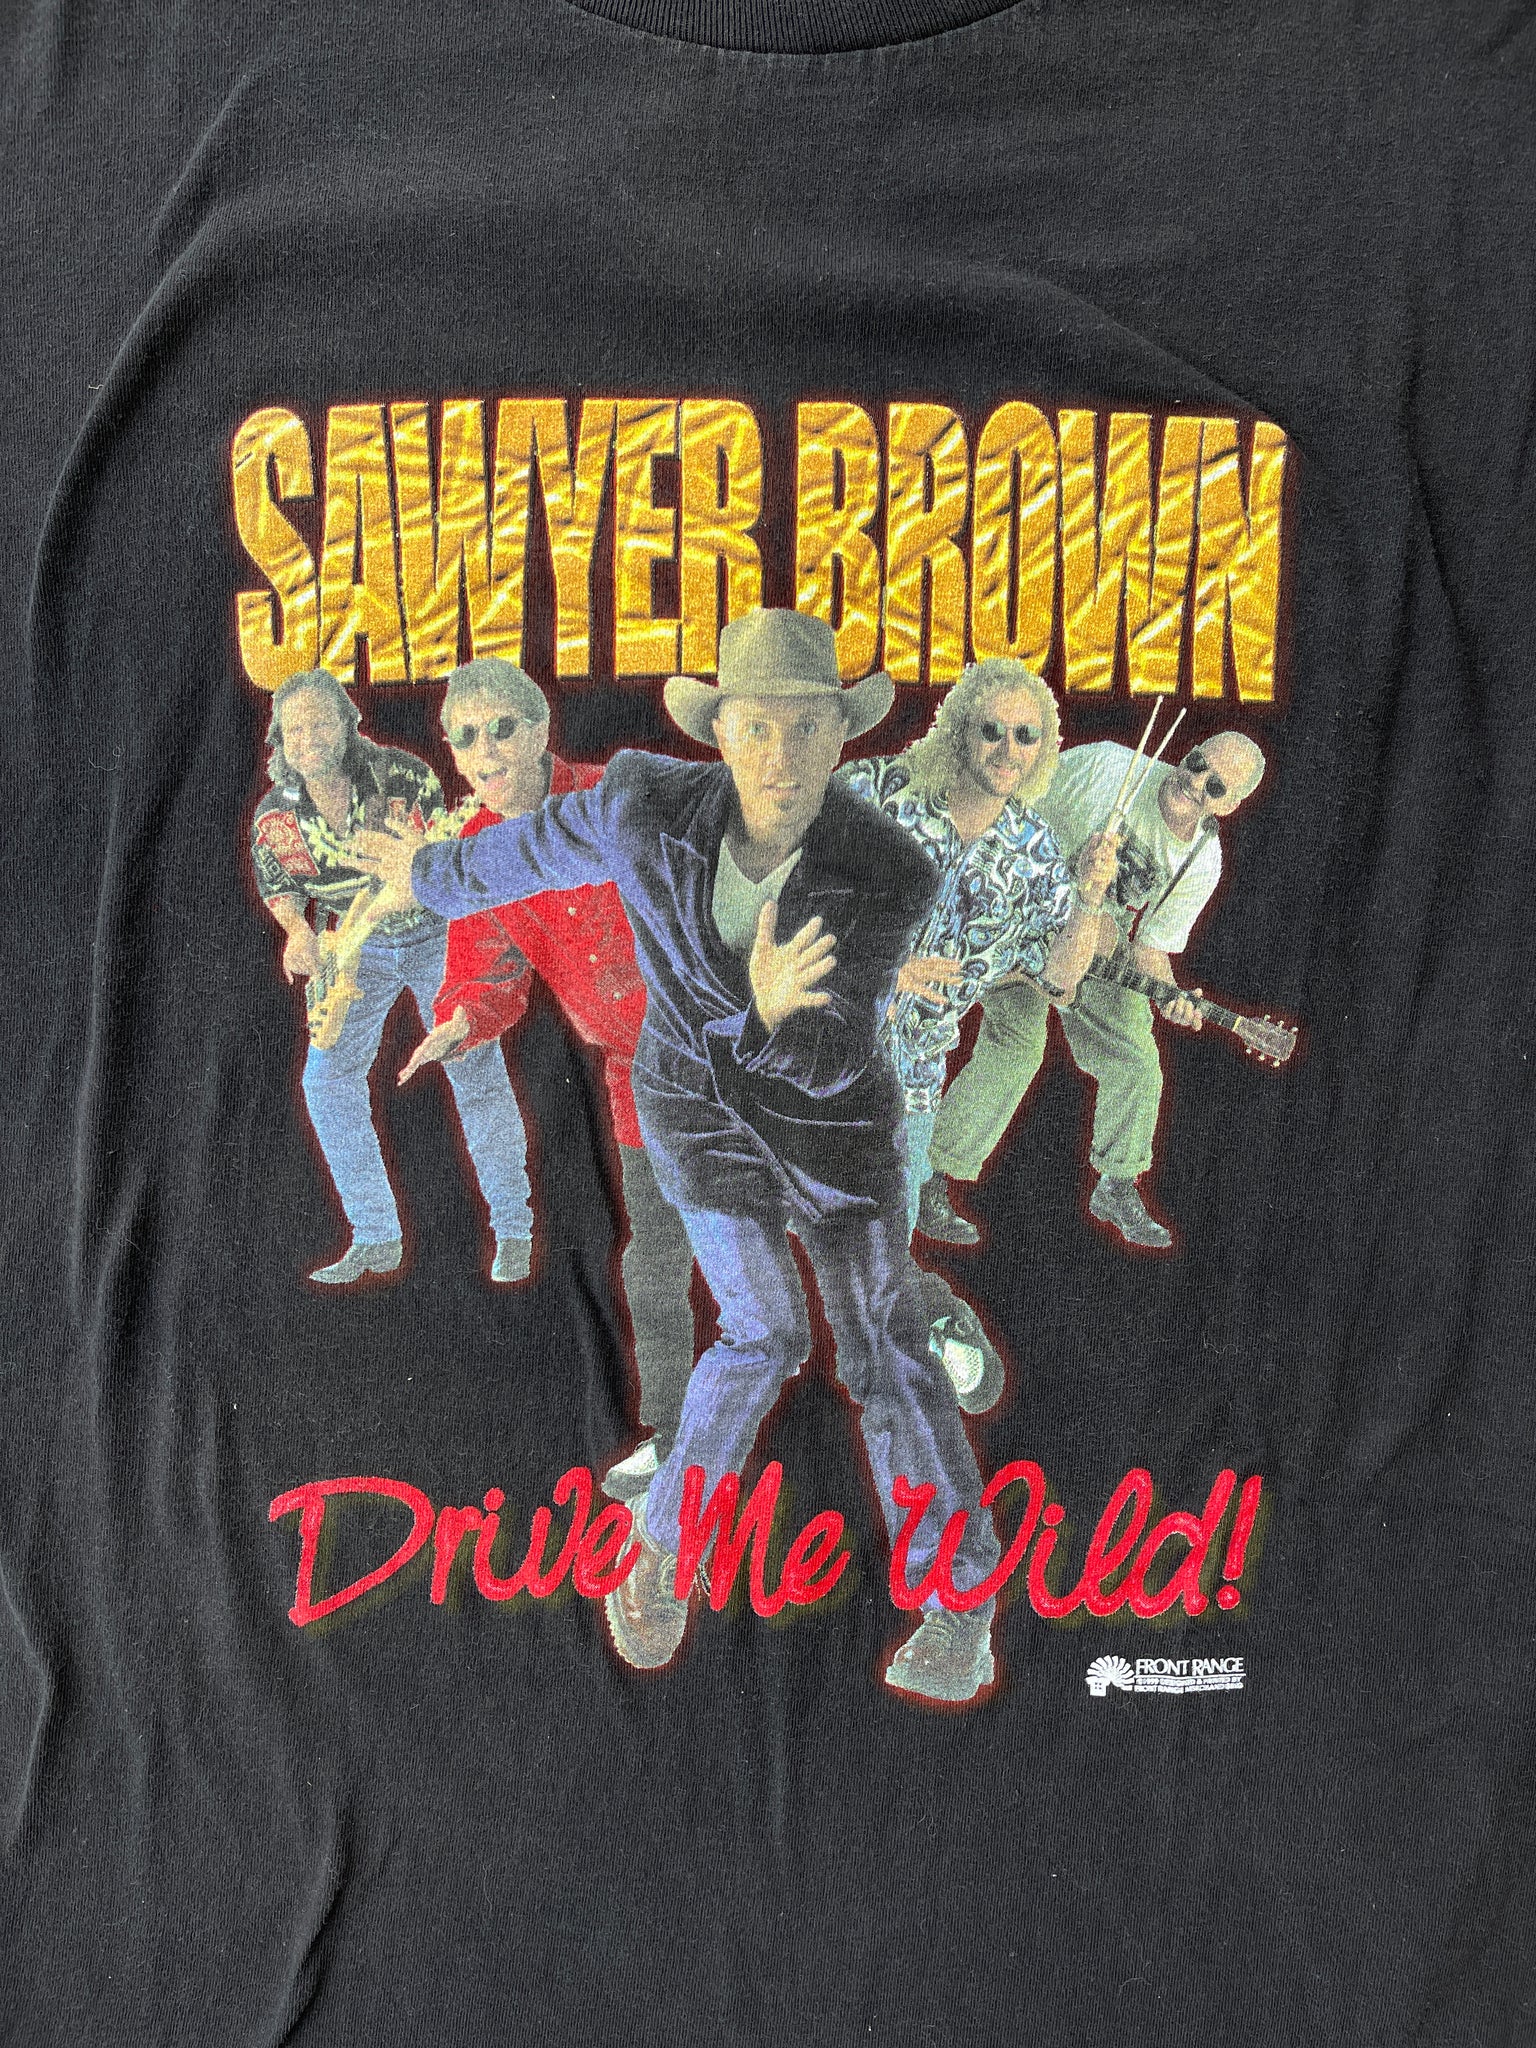 90s sawyer brown tee